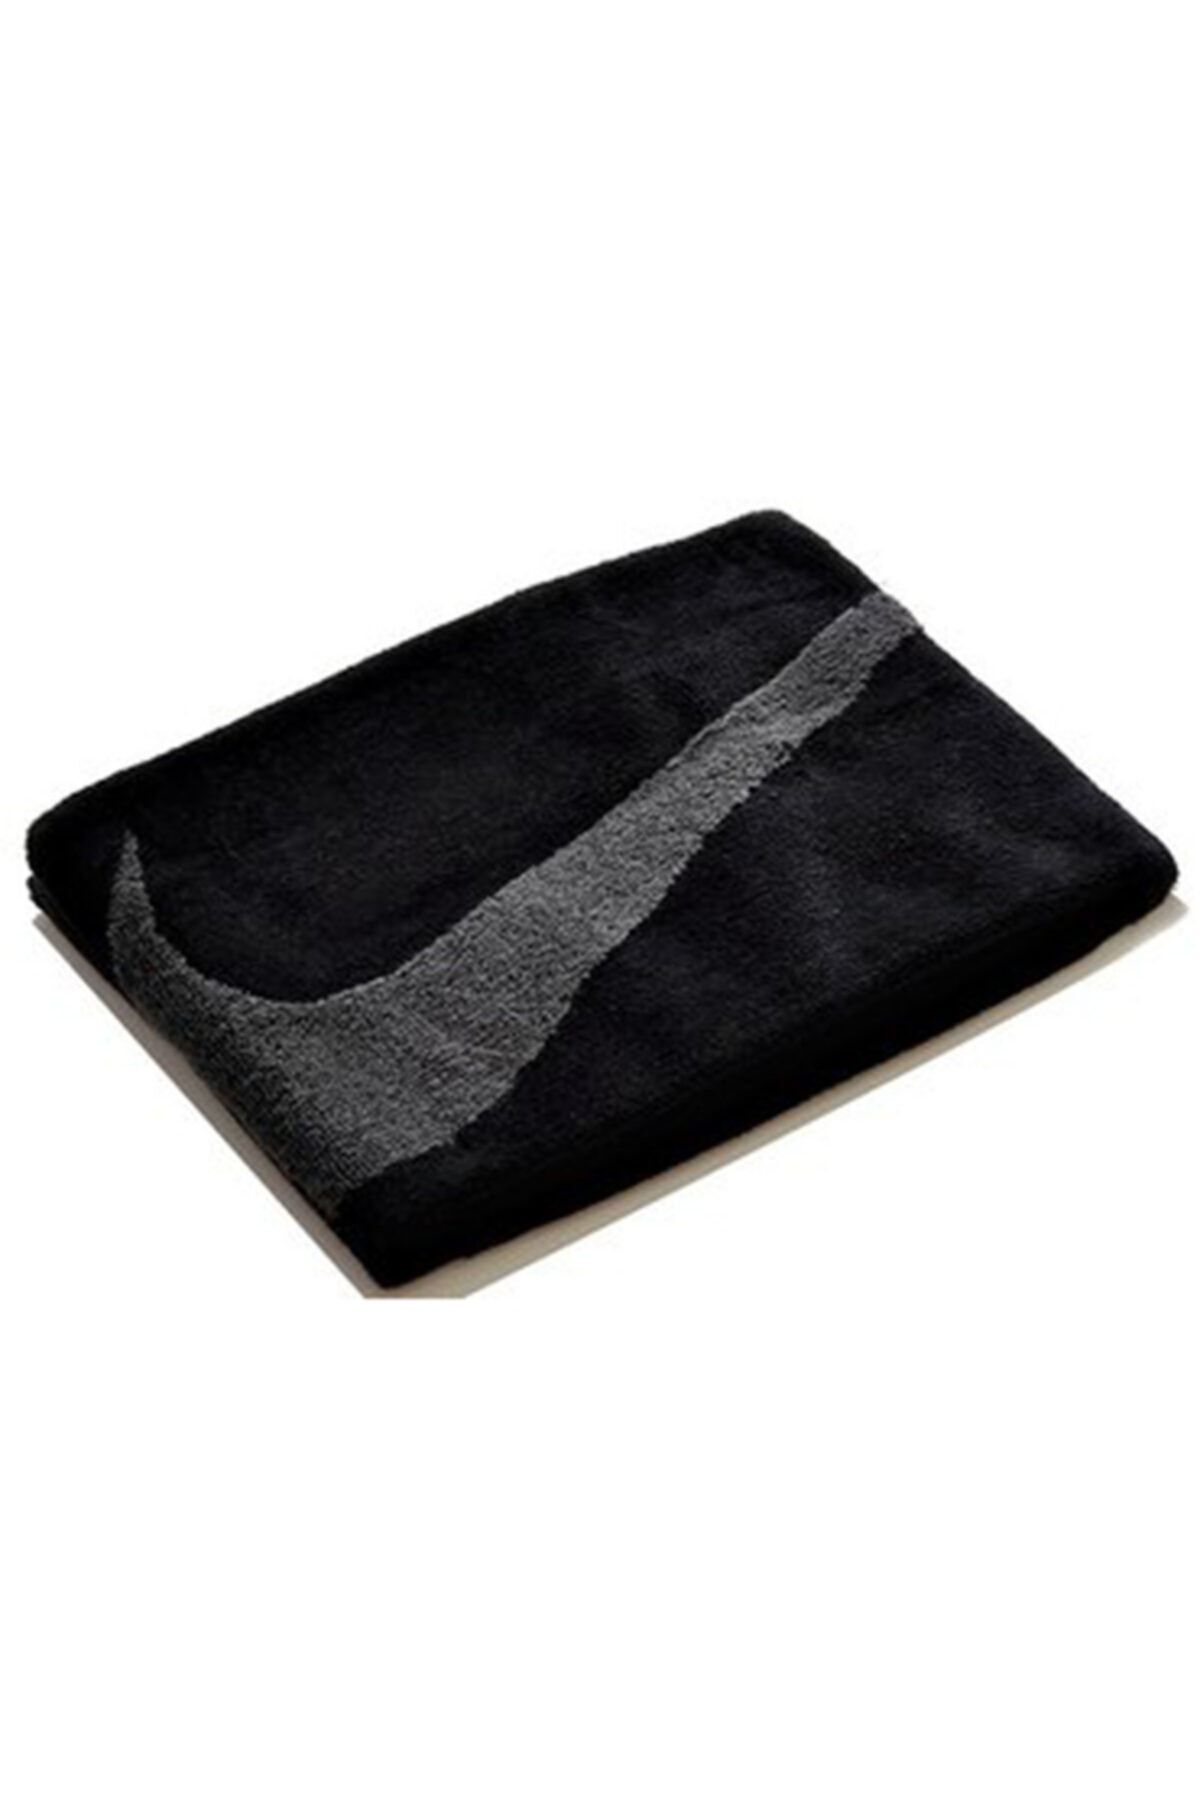 Nike Sport Towel Unisex Siyah Antrenman Havlu N.et.13.046.md